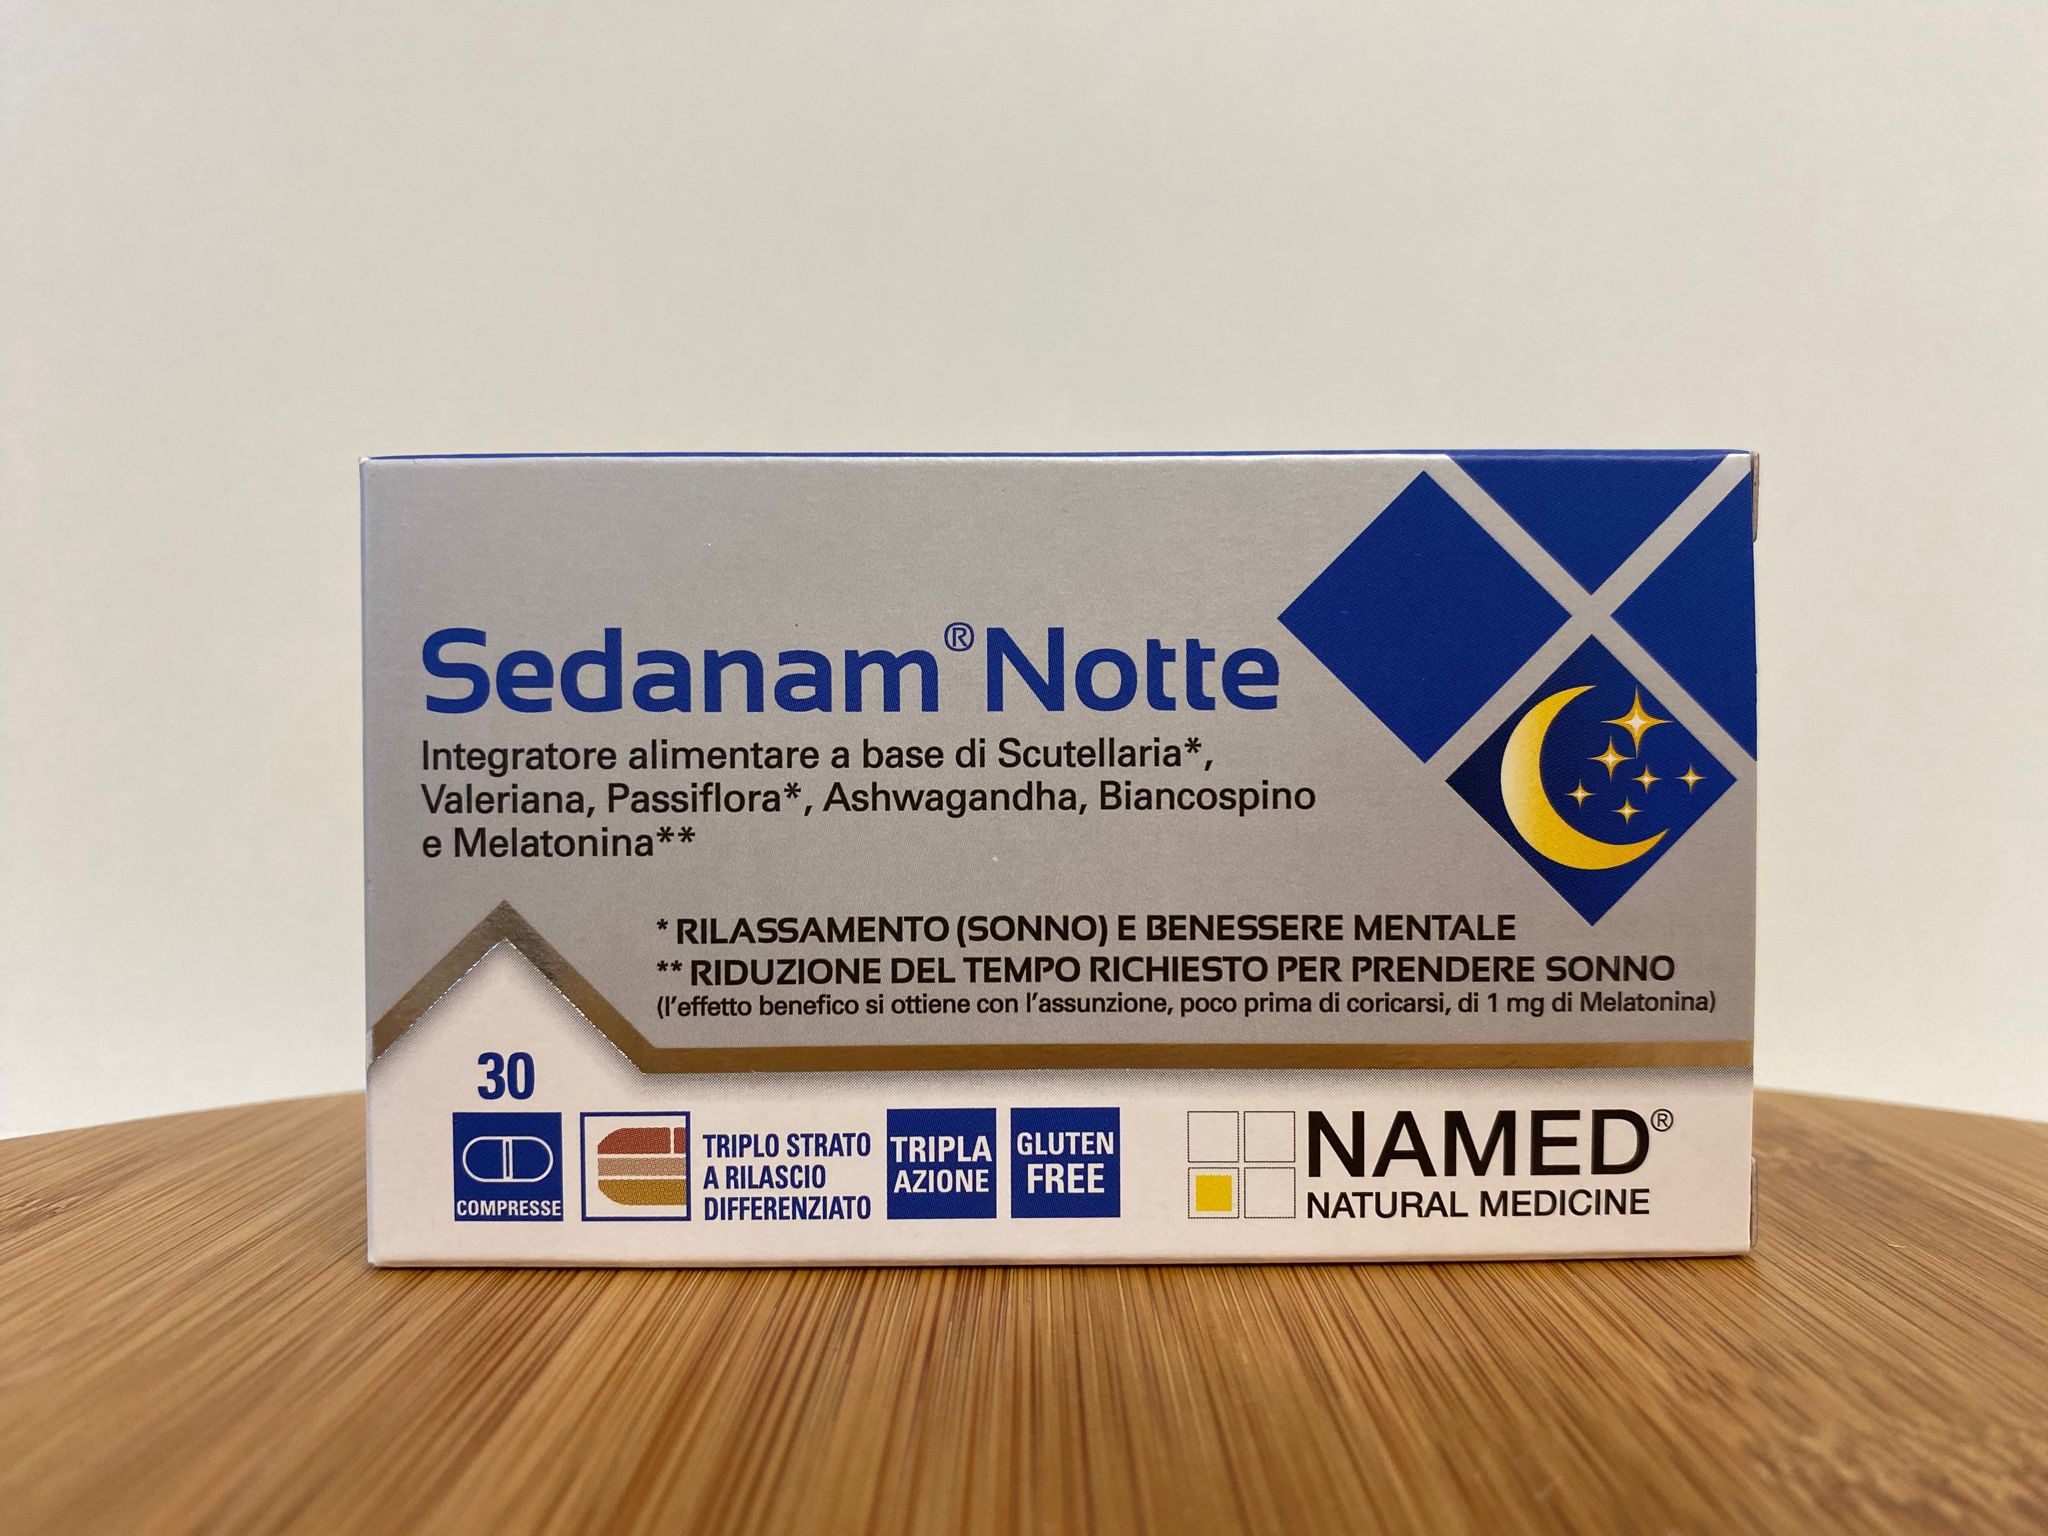 Named: Sedanam Notte